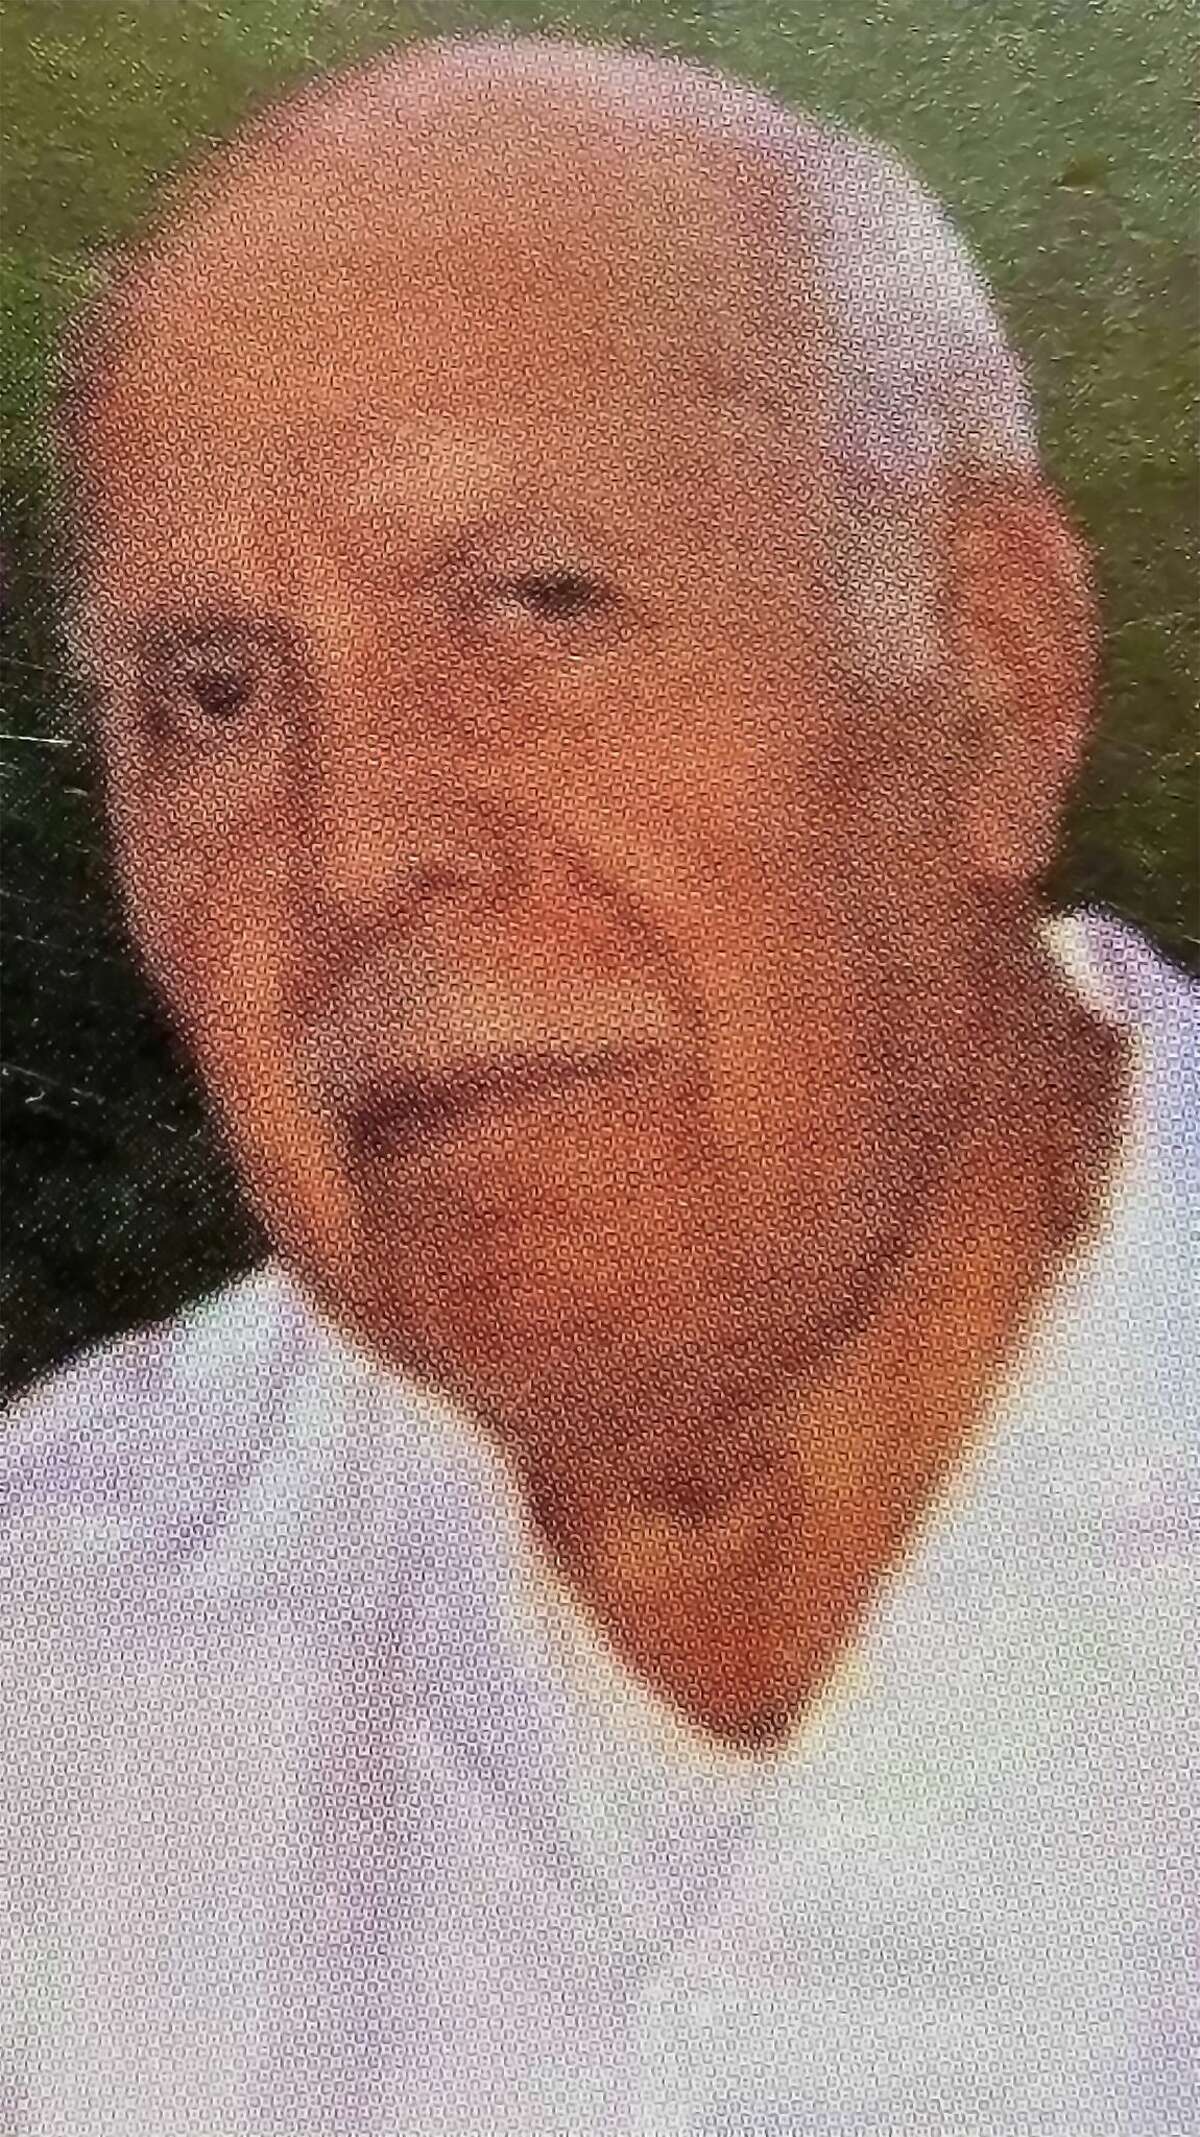 Luis Enrique Fragoso